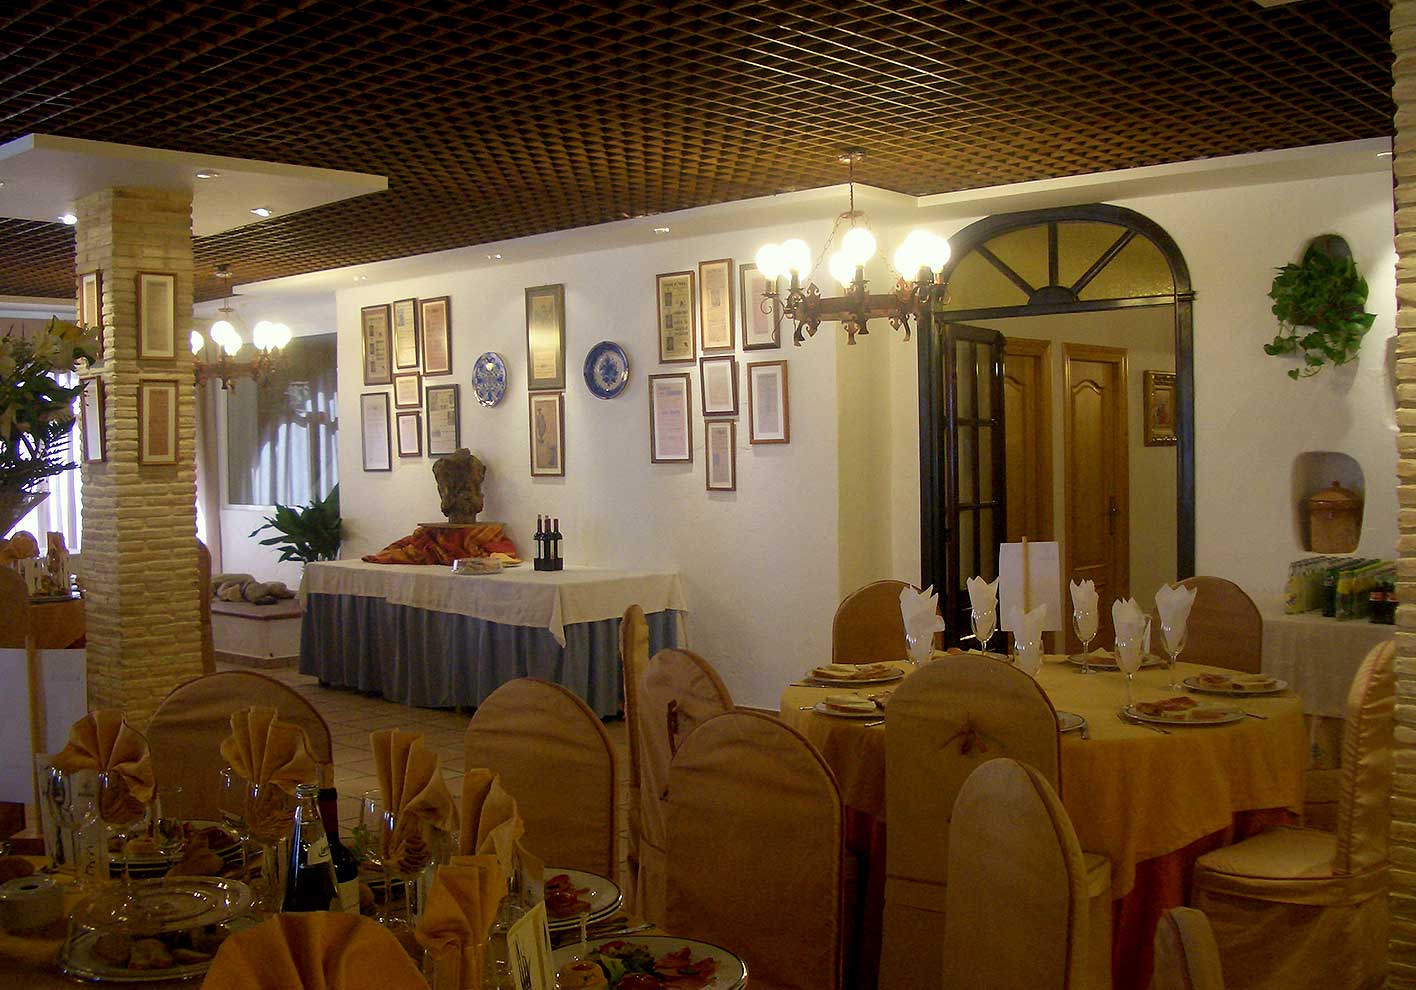 Private Dining Room 04 - Hotel Restaurante Terraza Carmona in Vera, Almeria